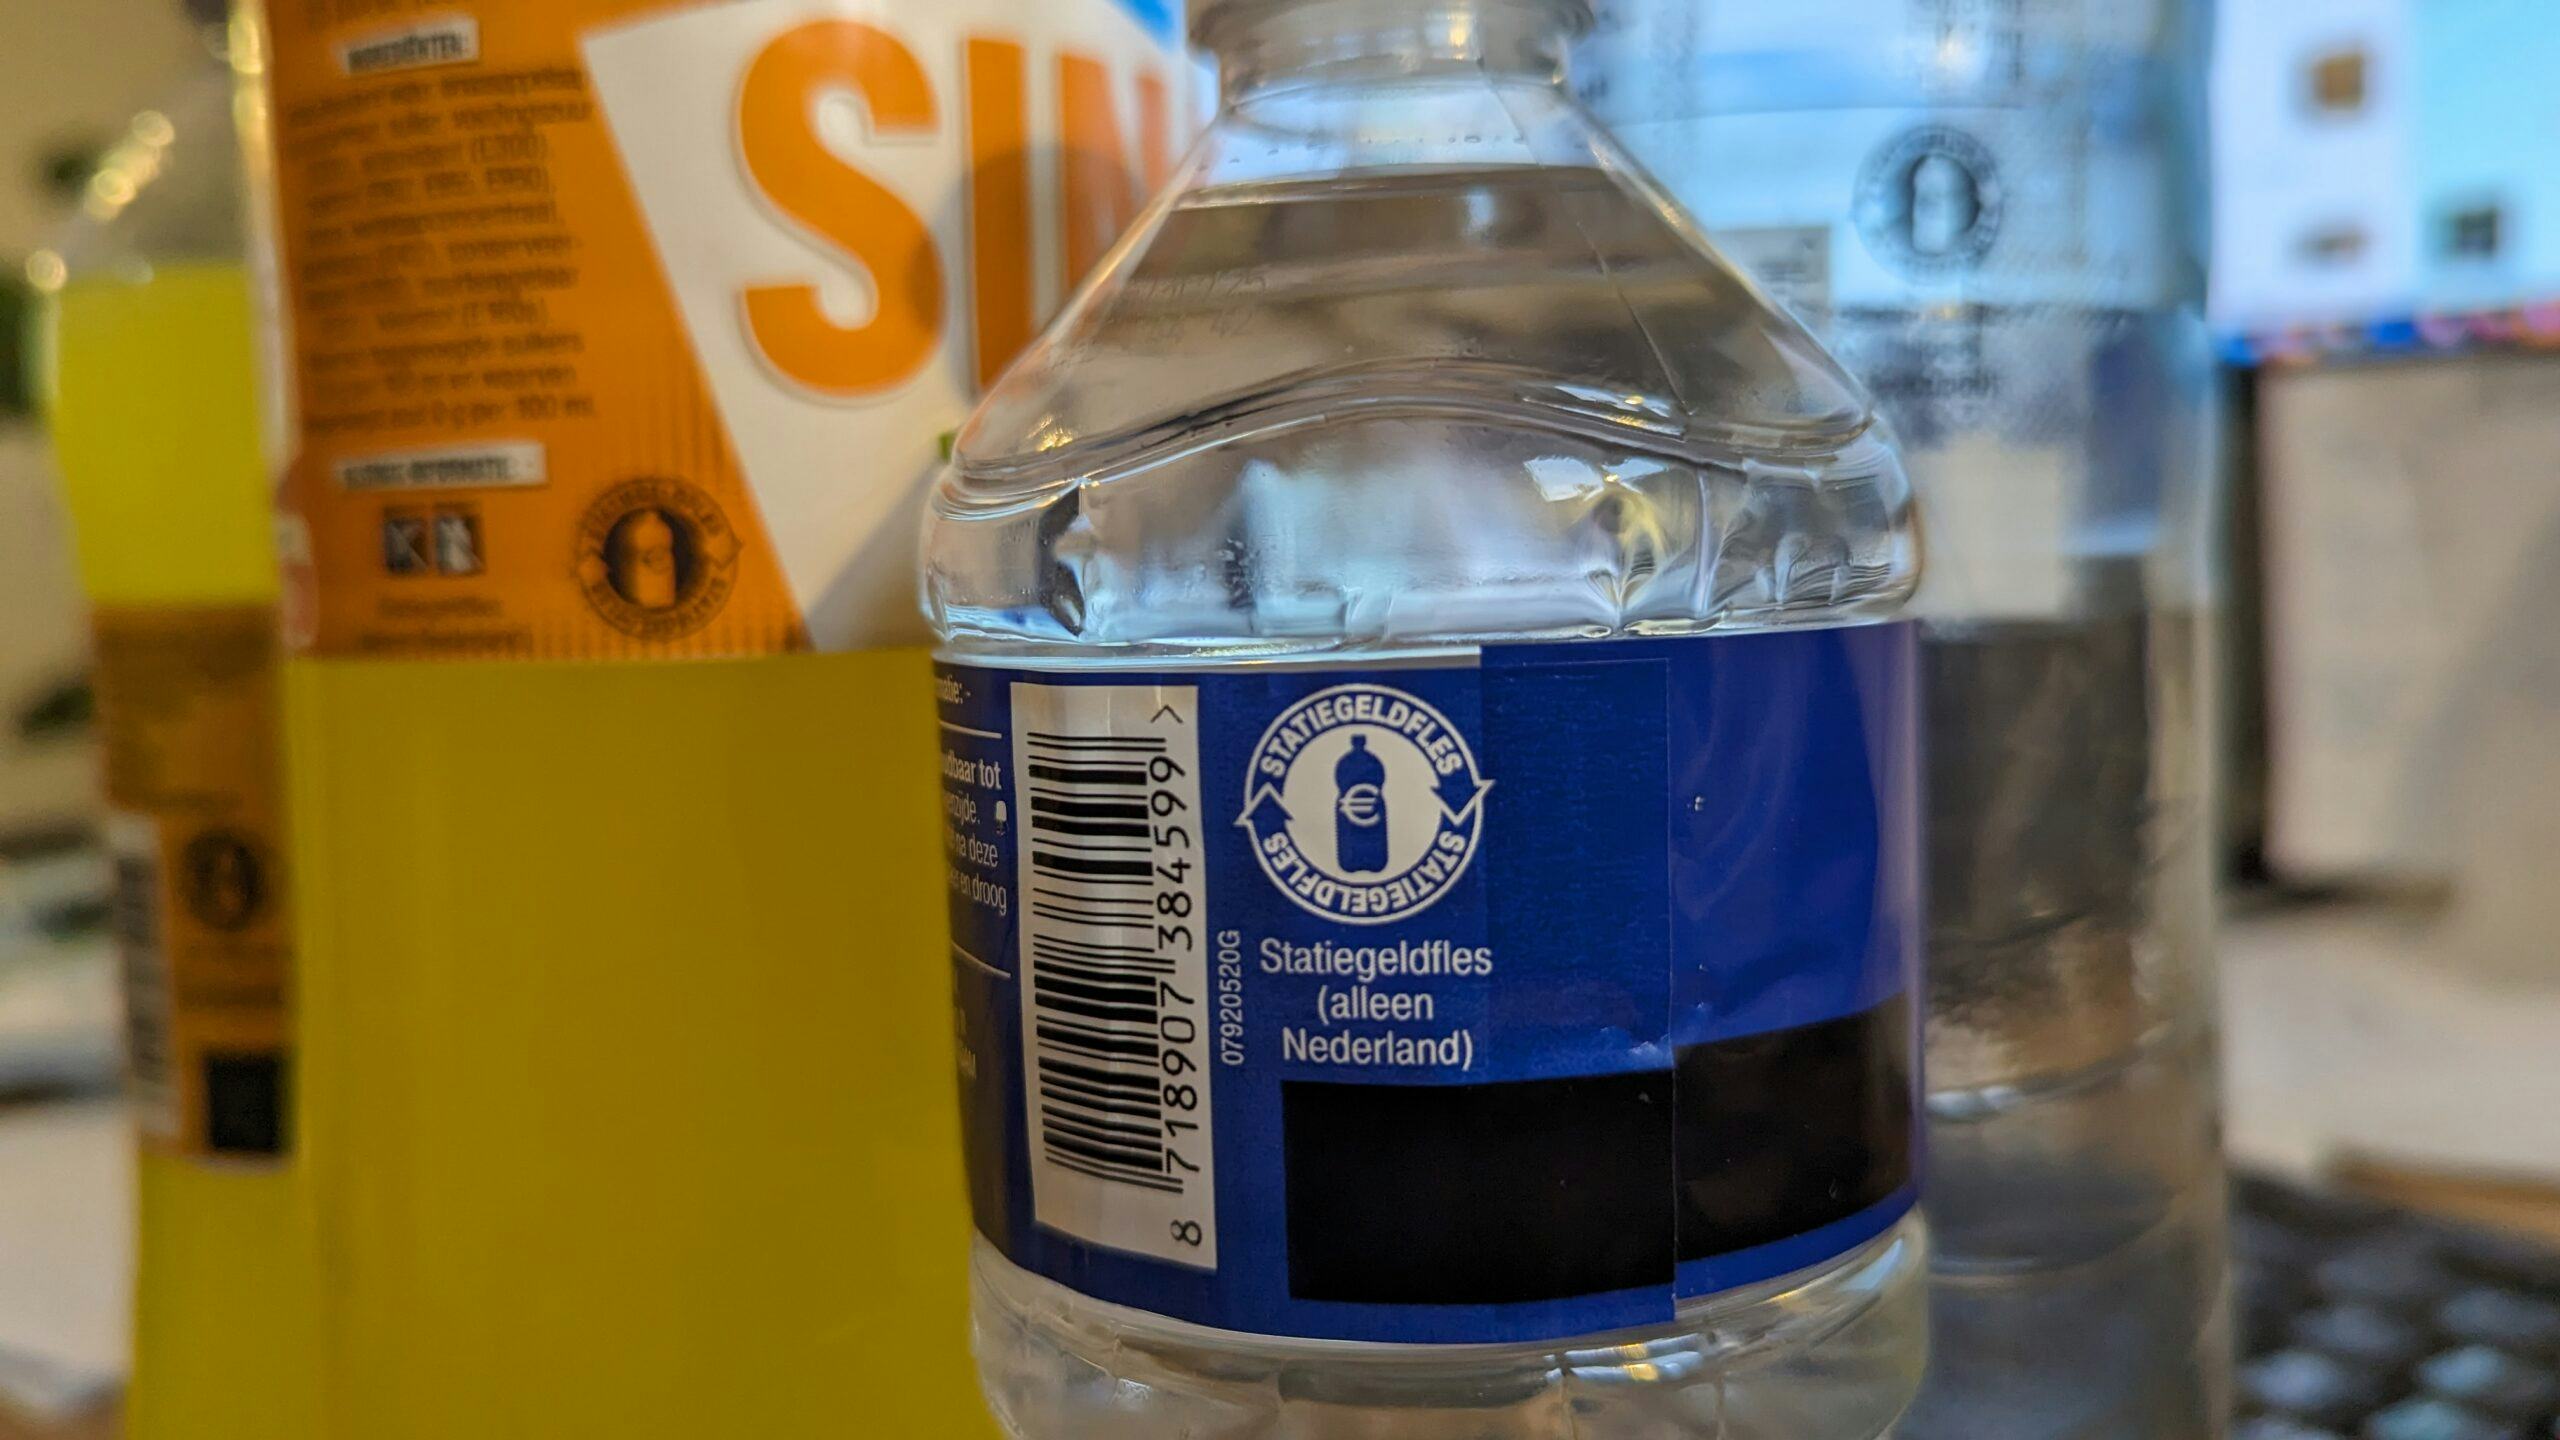 De flessen huismerkfris die in Belgie worden verkocht, zijn gewoon voorzien van het Nederlandse logo. Foto: Distrifood.